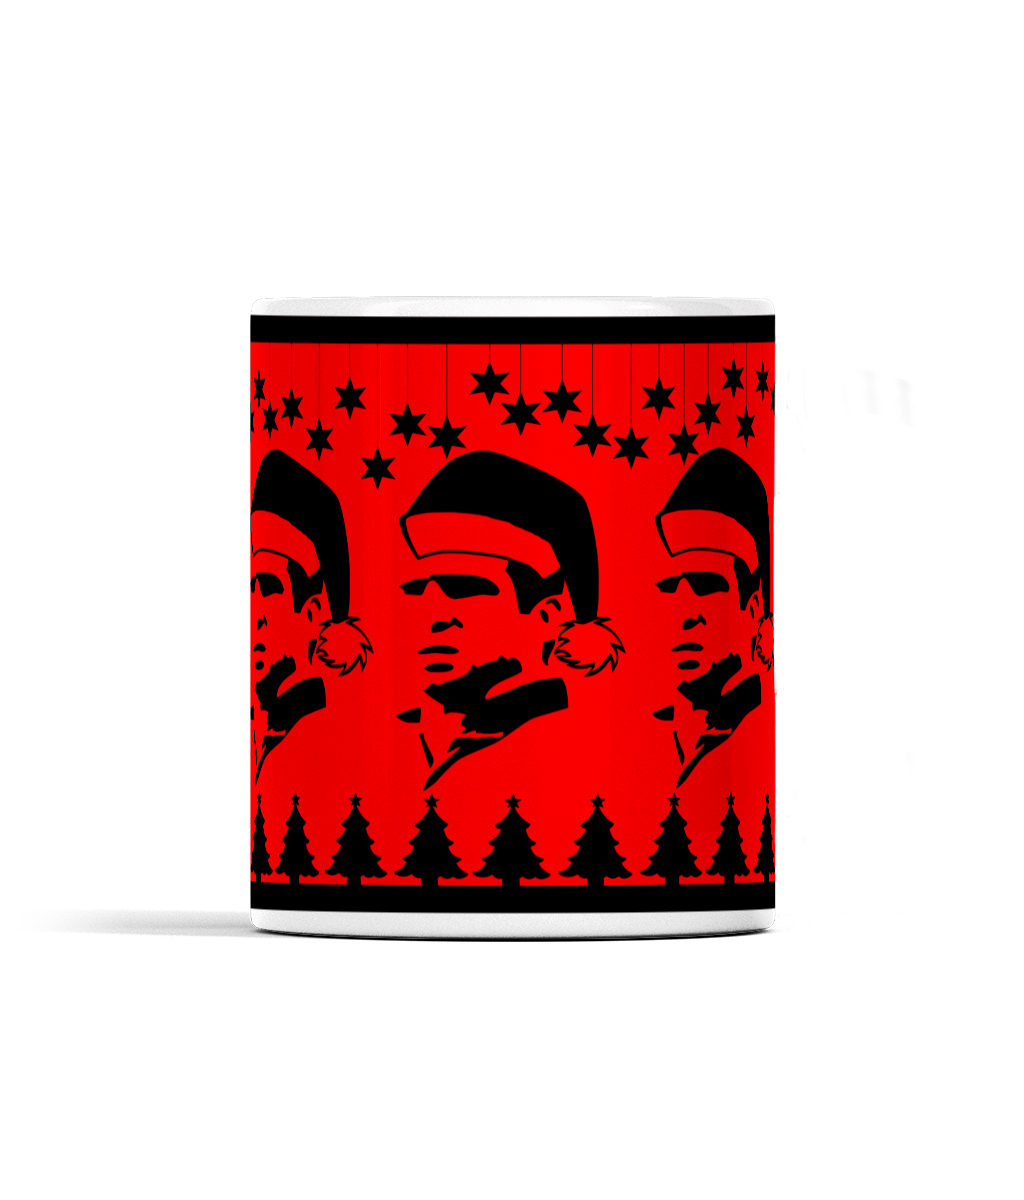 Five Cantonas Christmas Mug